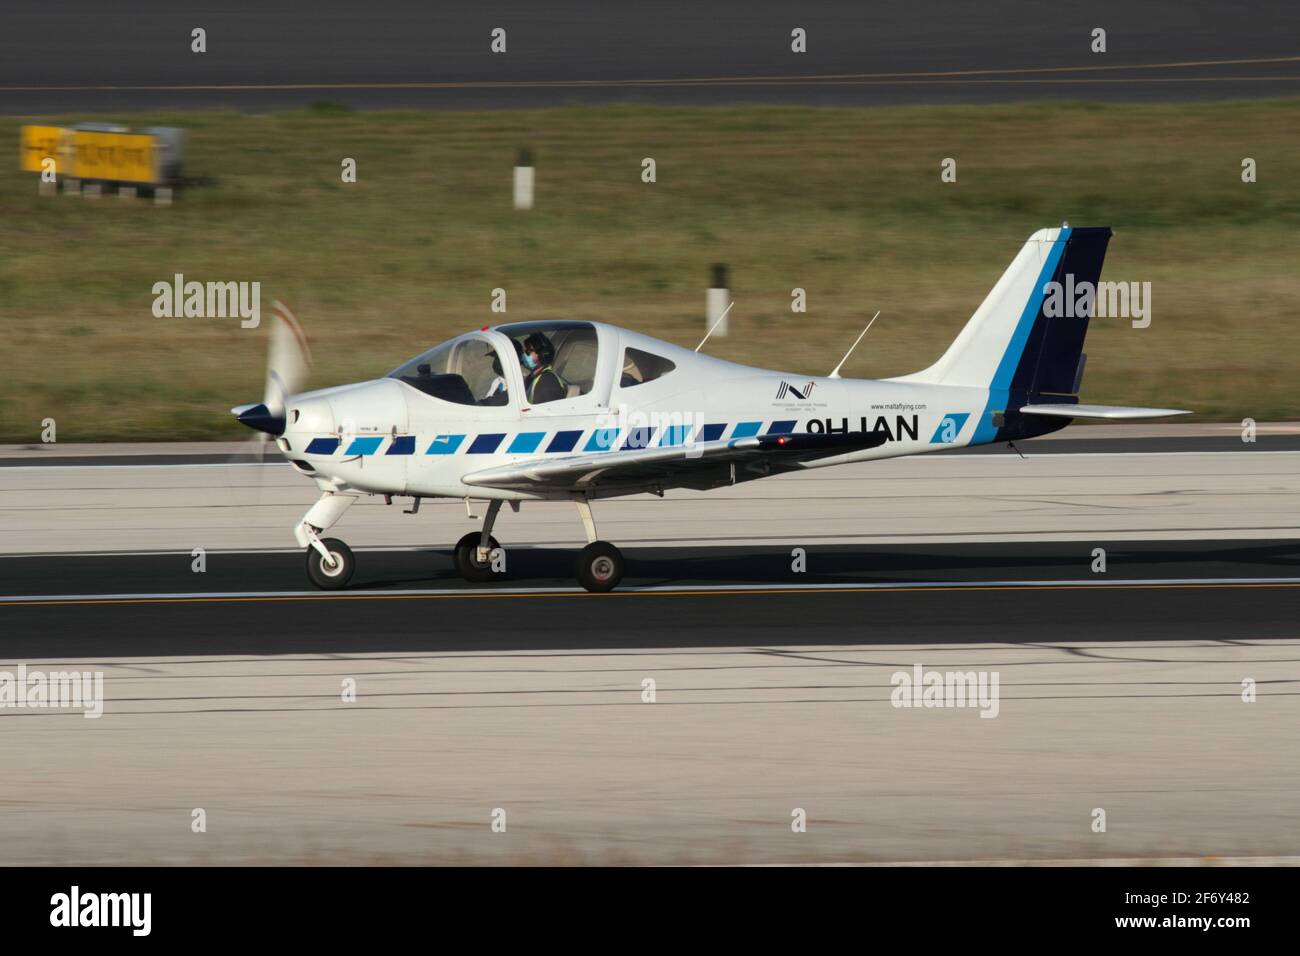 TECNAM P2002 Sierra aereo privato ad elica monomotore sulla Pista all'aeroporto internazionale di Malta Foto Stock